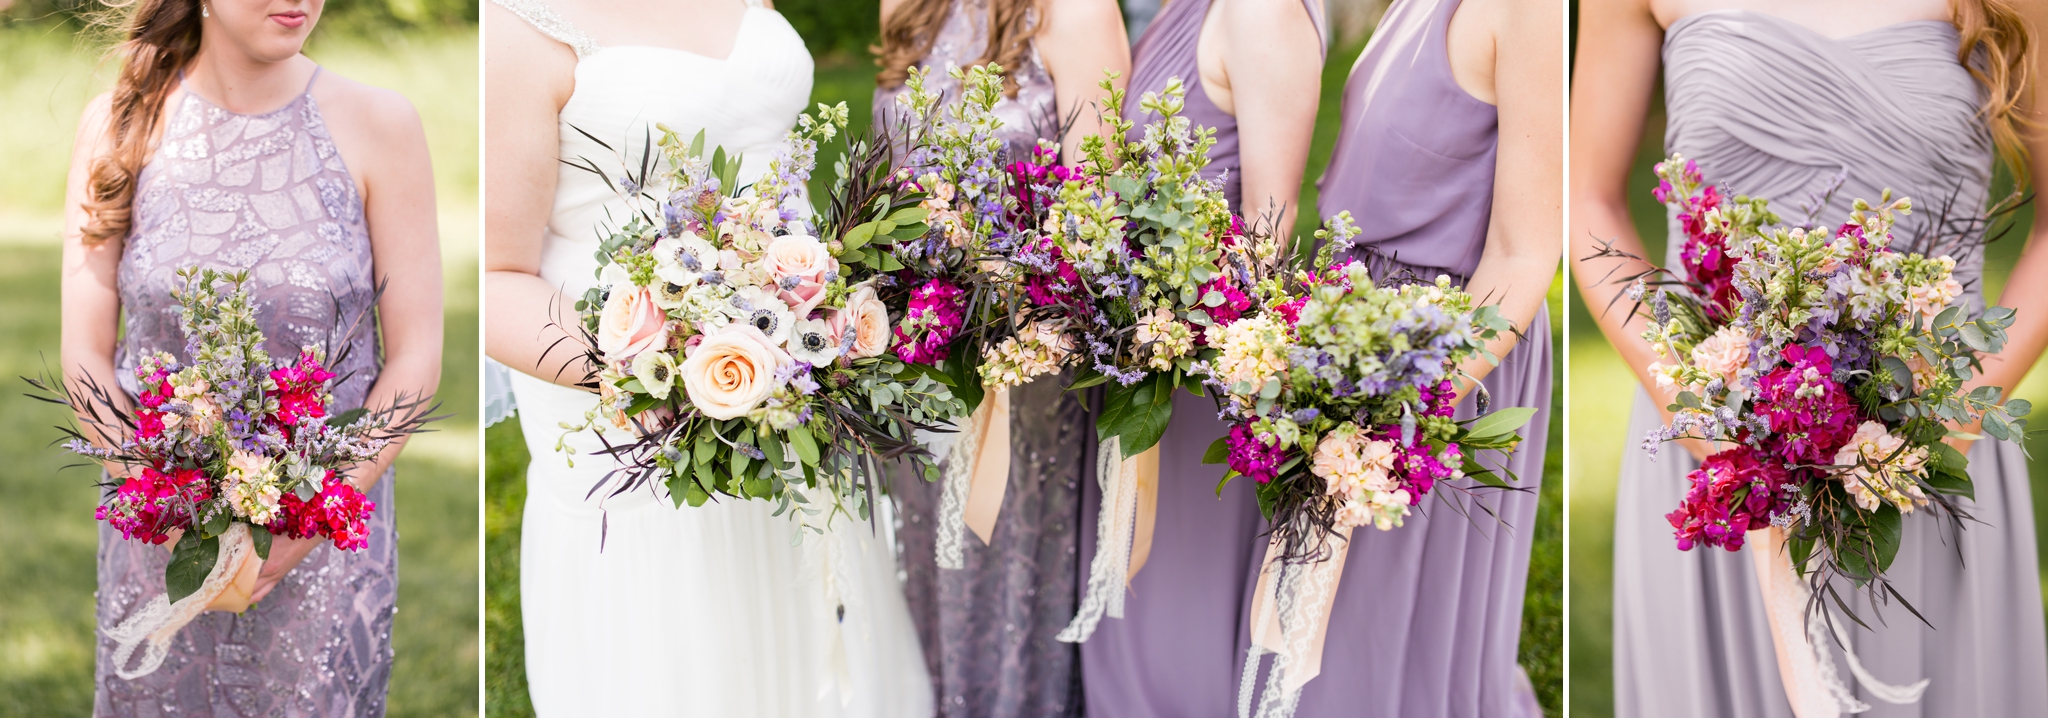 lavender-bridesmaid-florals-donna-morgan-dresses